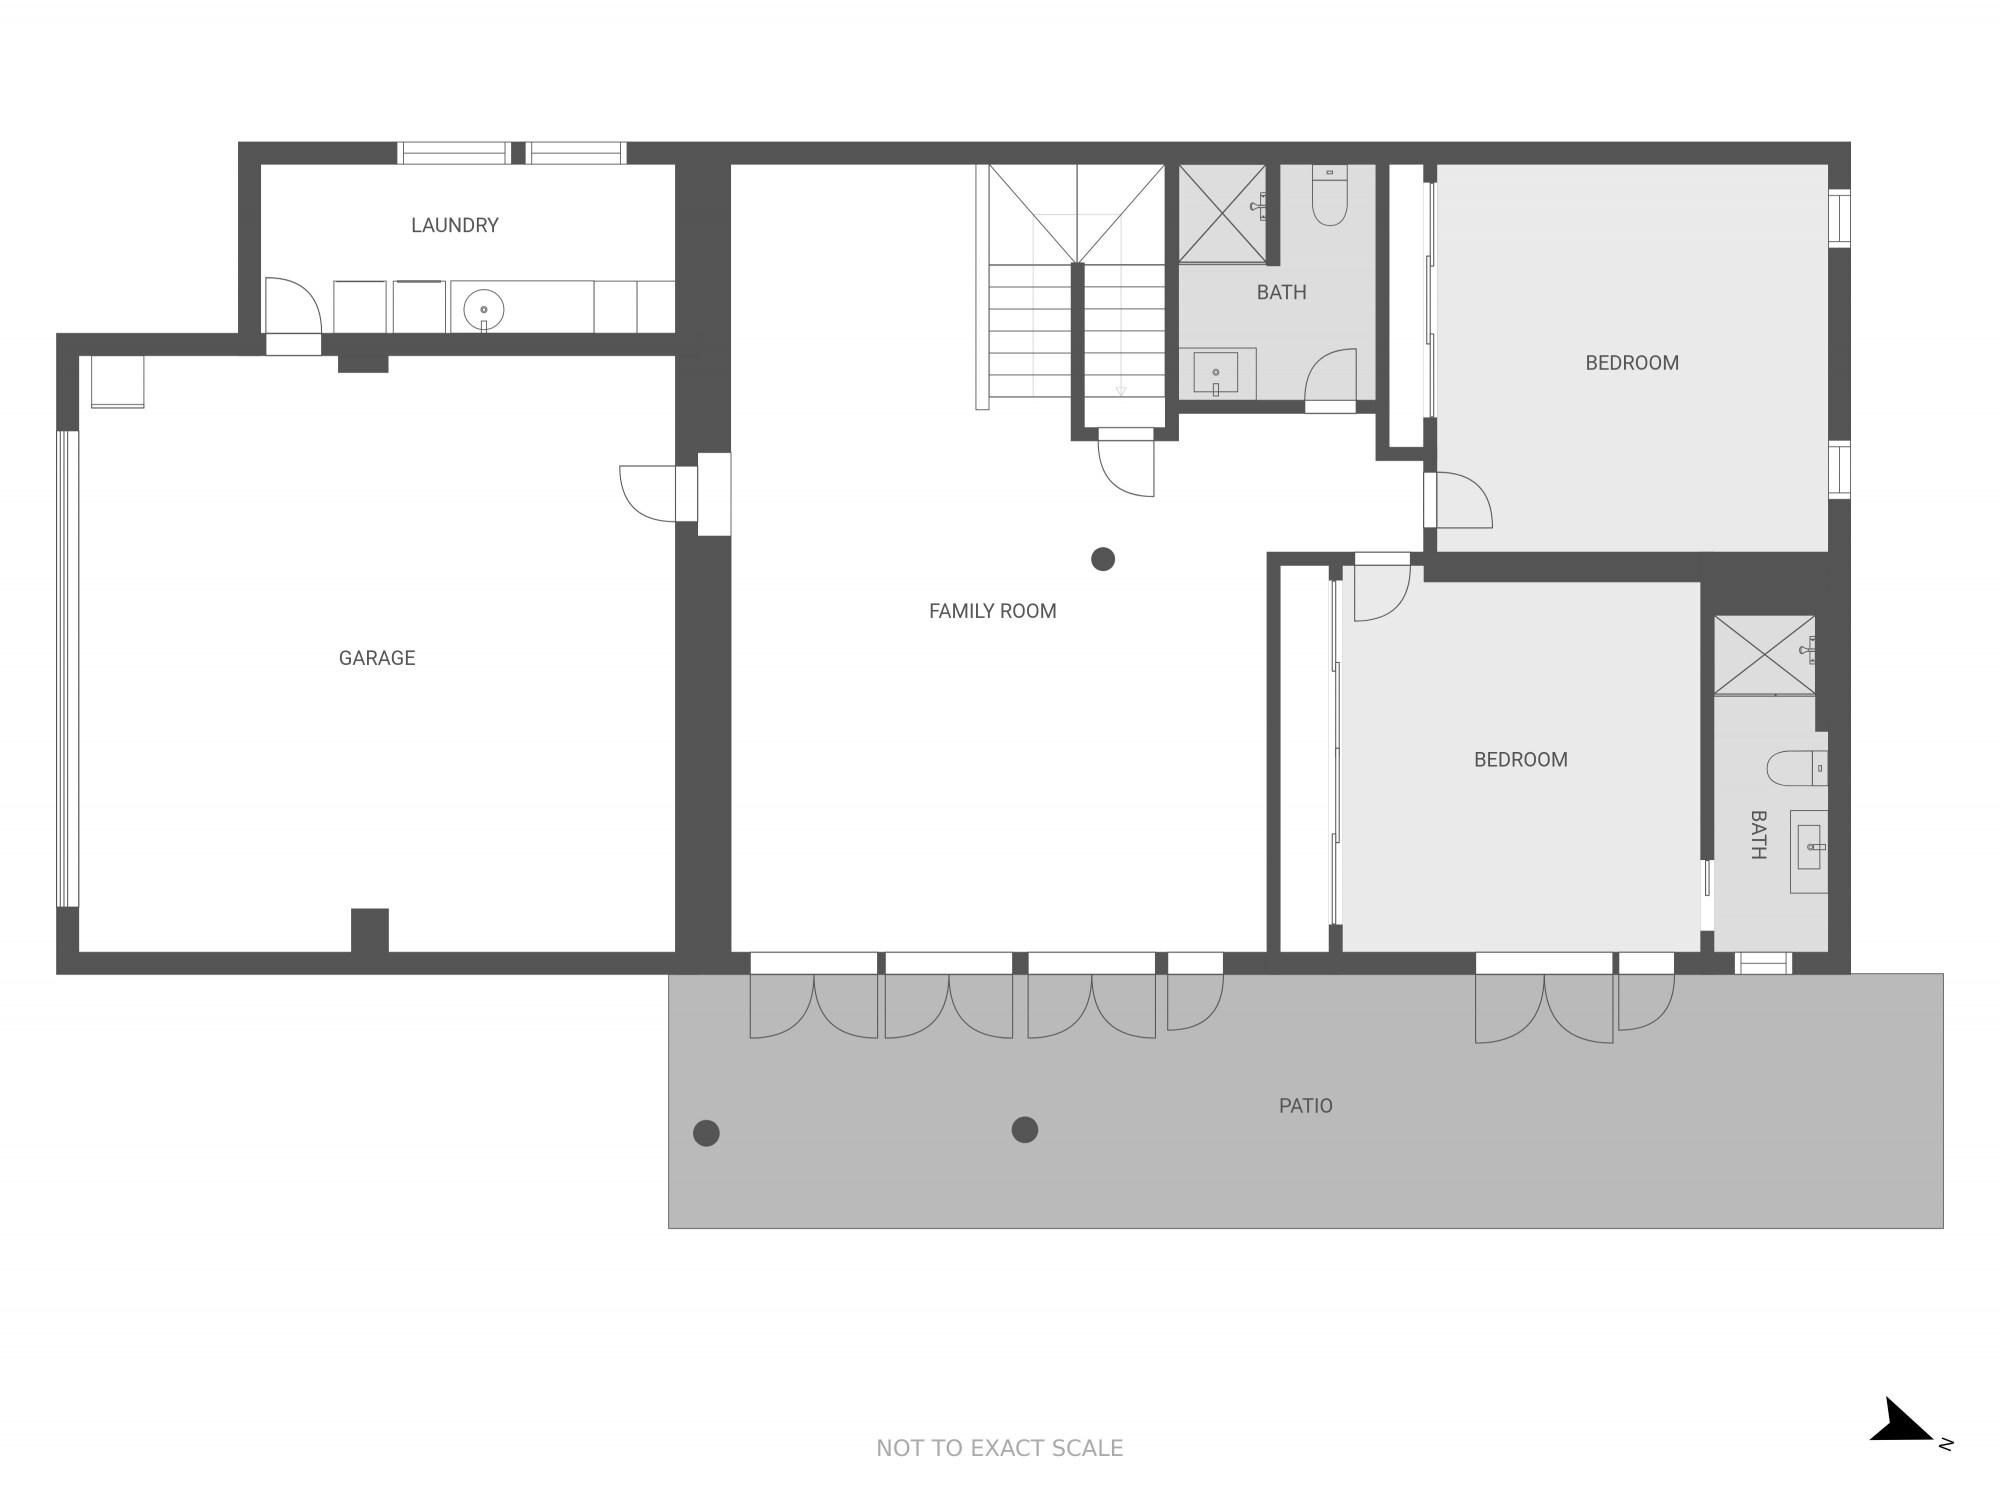 Bottom level floor plan